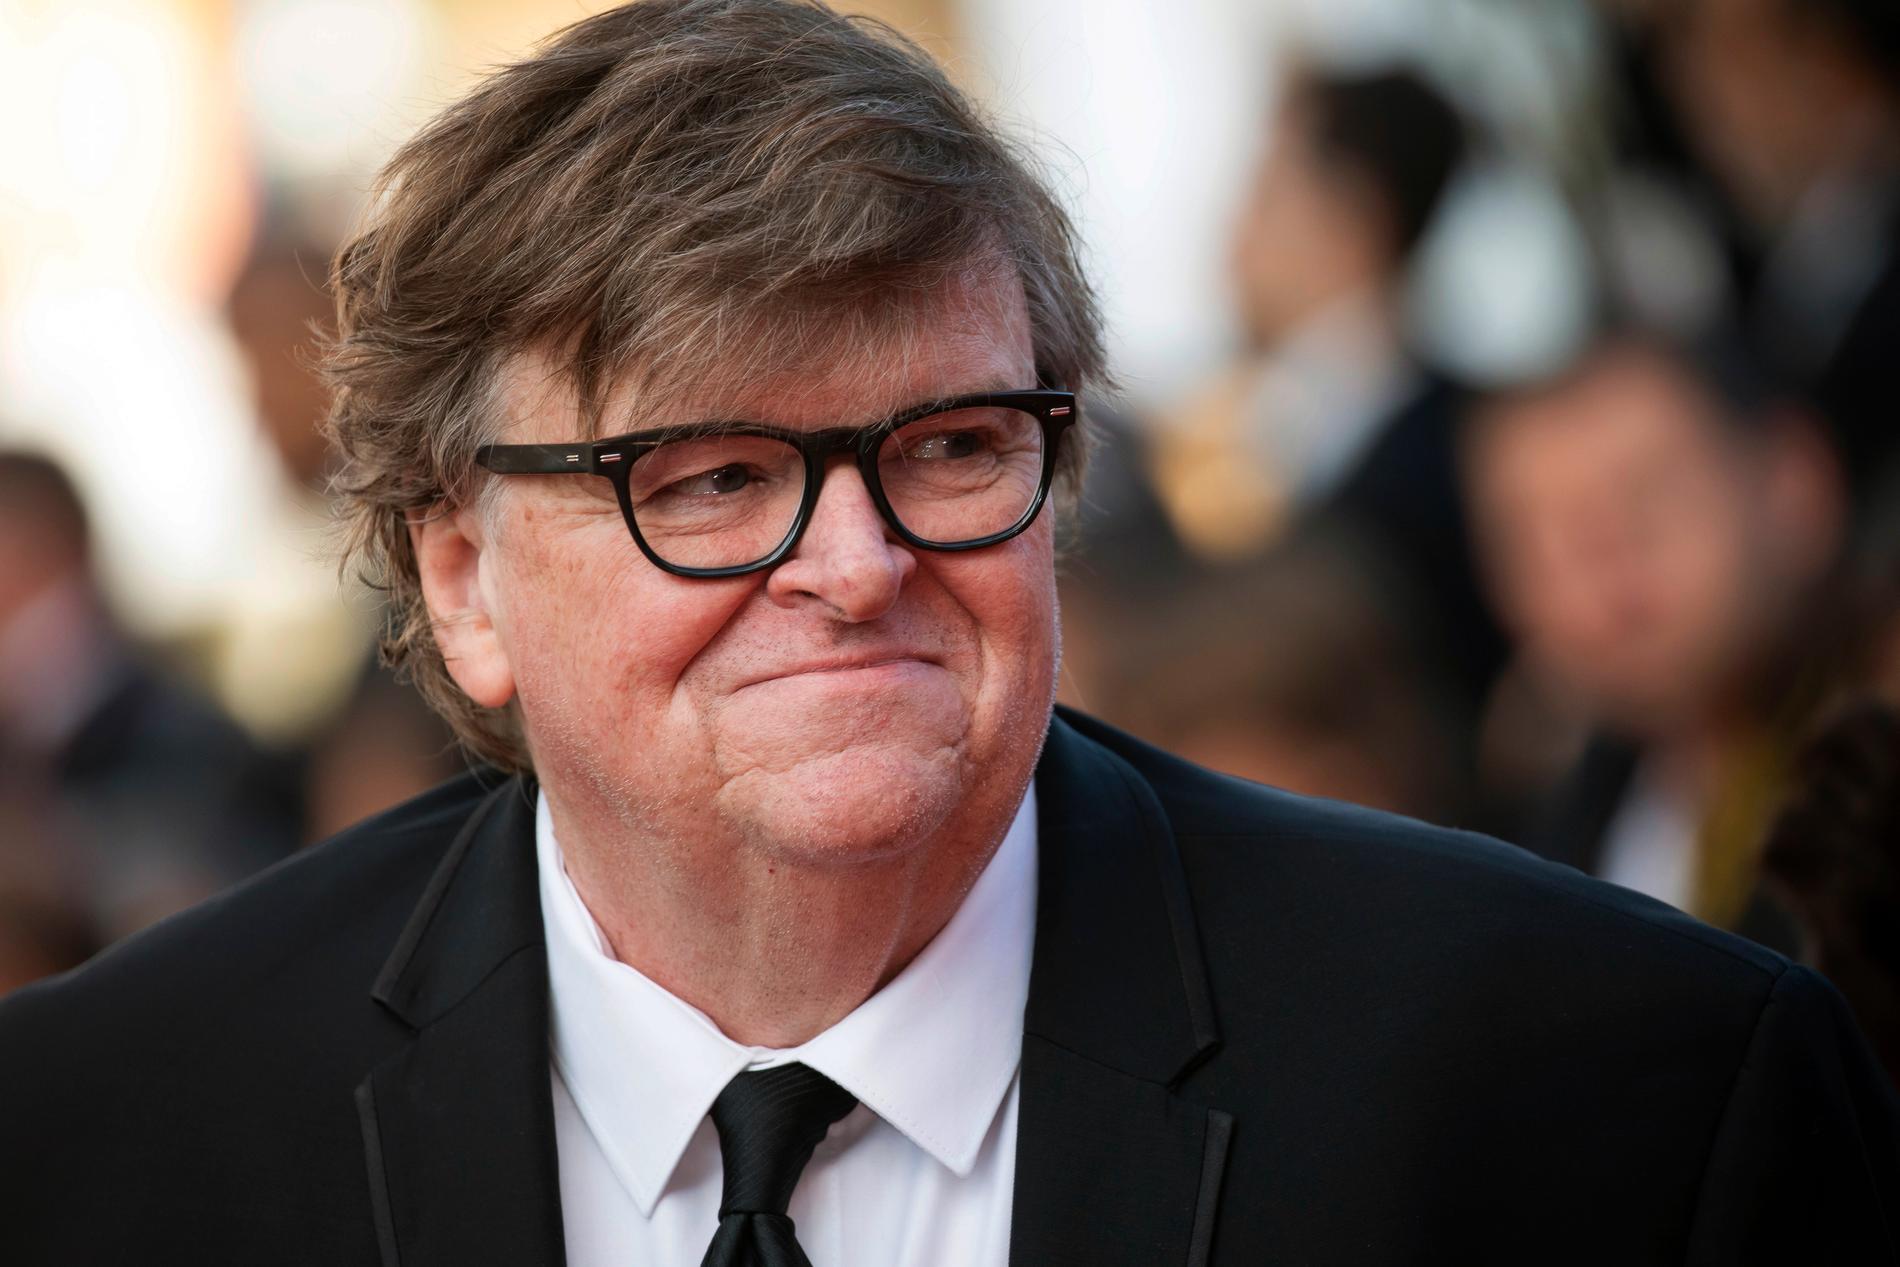 Michael Moores senaste verk ”Planet of the humans” får nobben av omvärlden.